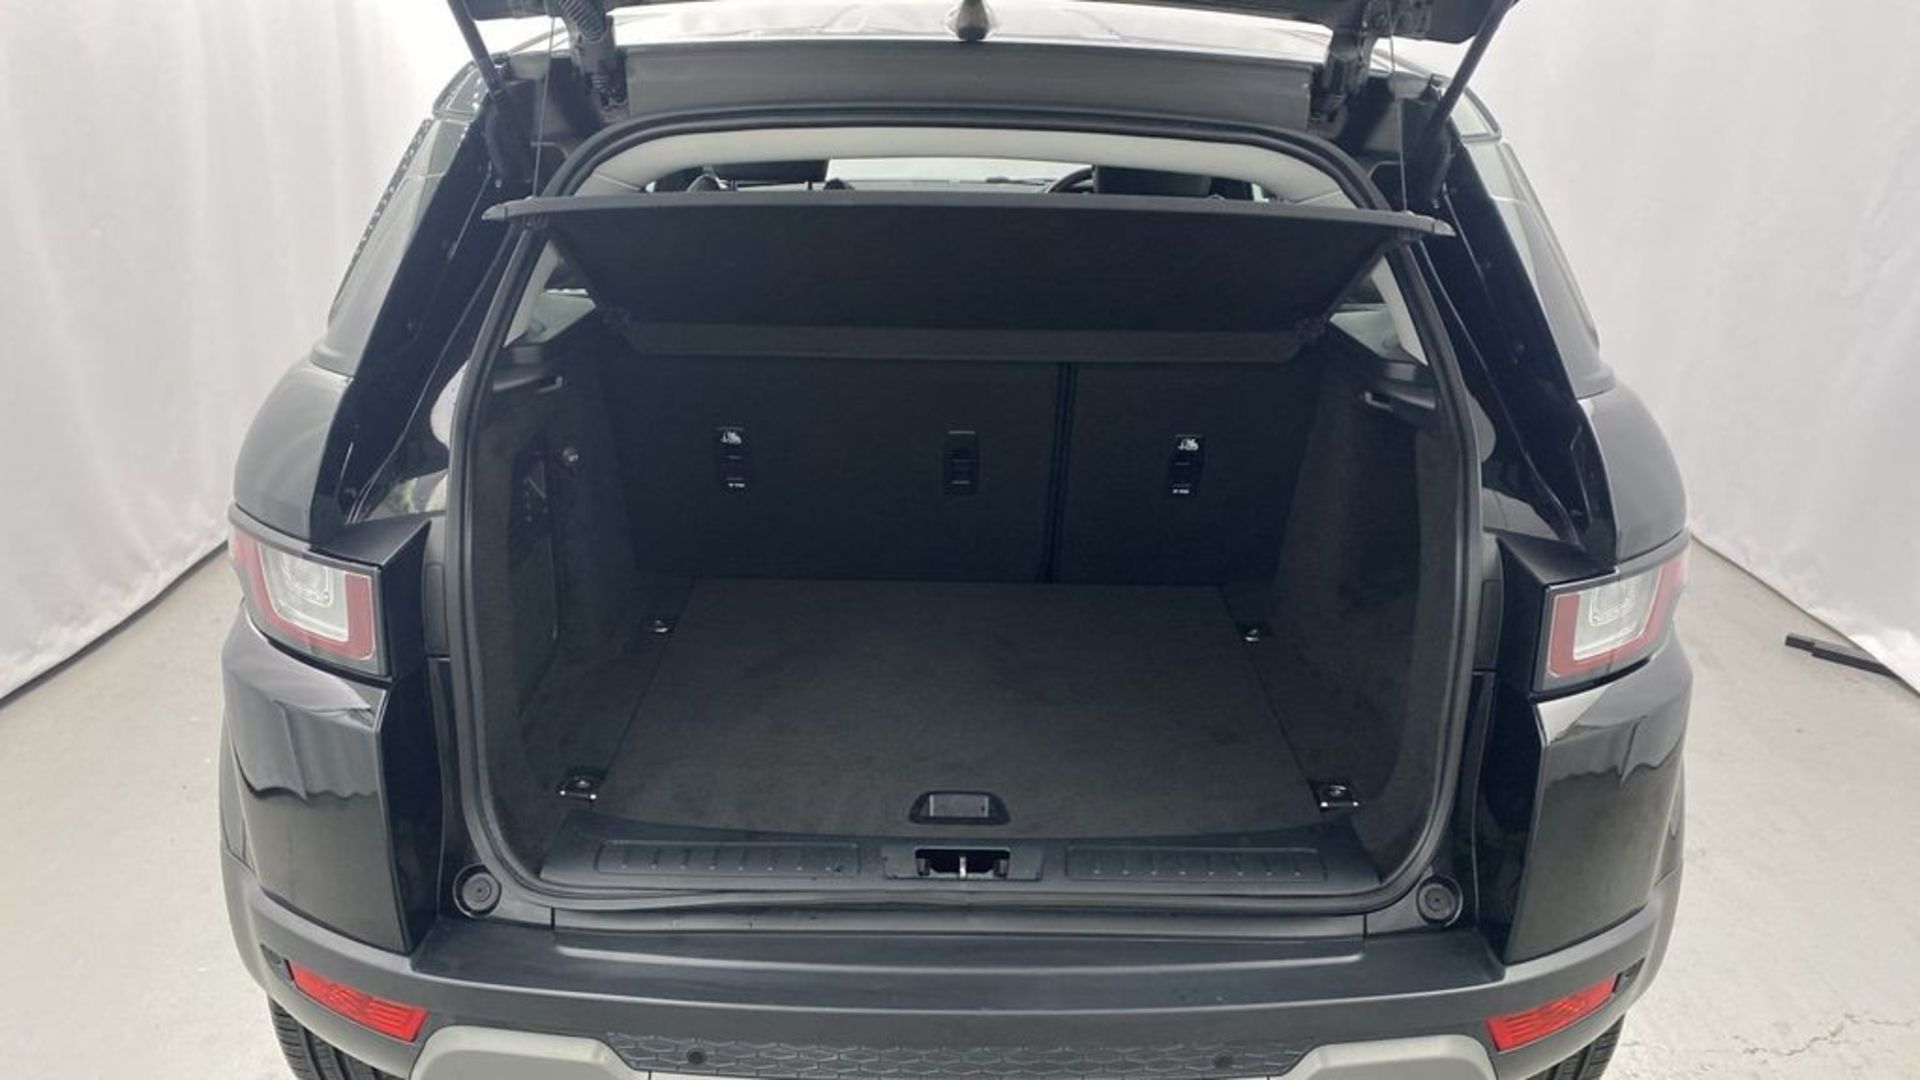 (Reserve Met) Range Rover Evoque 2.0 ED4 SE Tech - 2018 Model - FLRSH - Parking Sensors - 65k only!! - Image 10 of 14